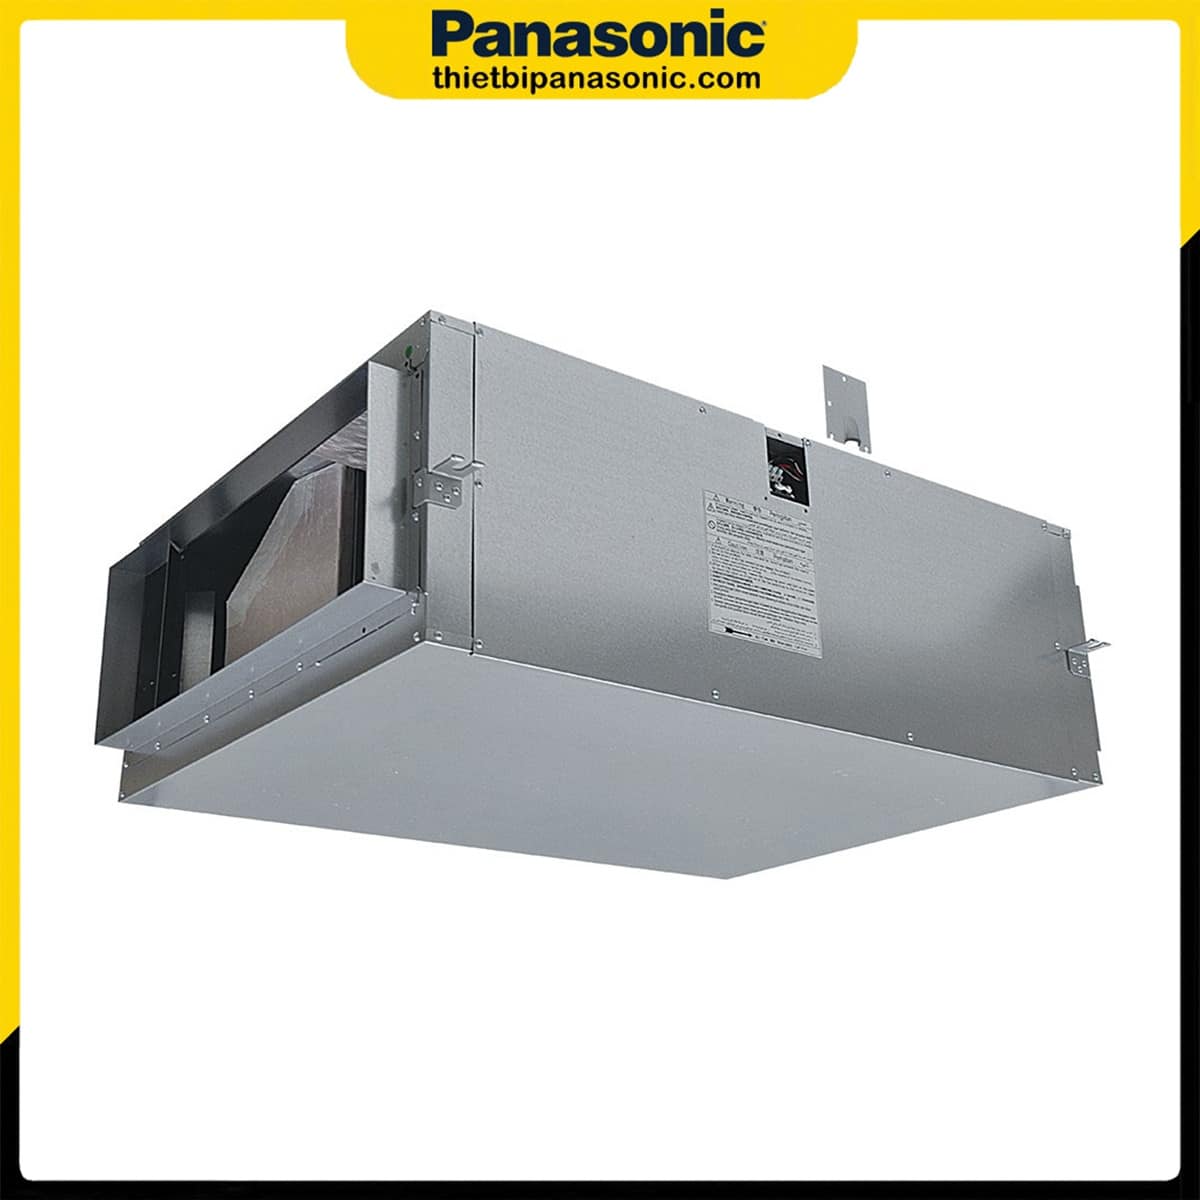 Quạt hút công nghiệp 3 pha Panasonic FV-25SM3 được trang bị vật liệu hấp thụ âm thanh làm giảm tiếng ồn trong lúc vận hành